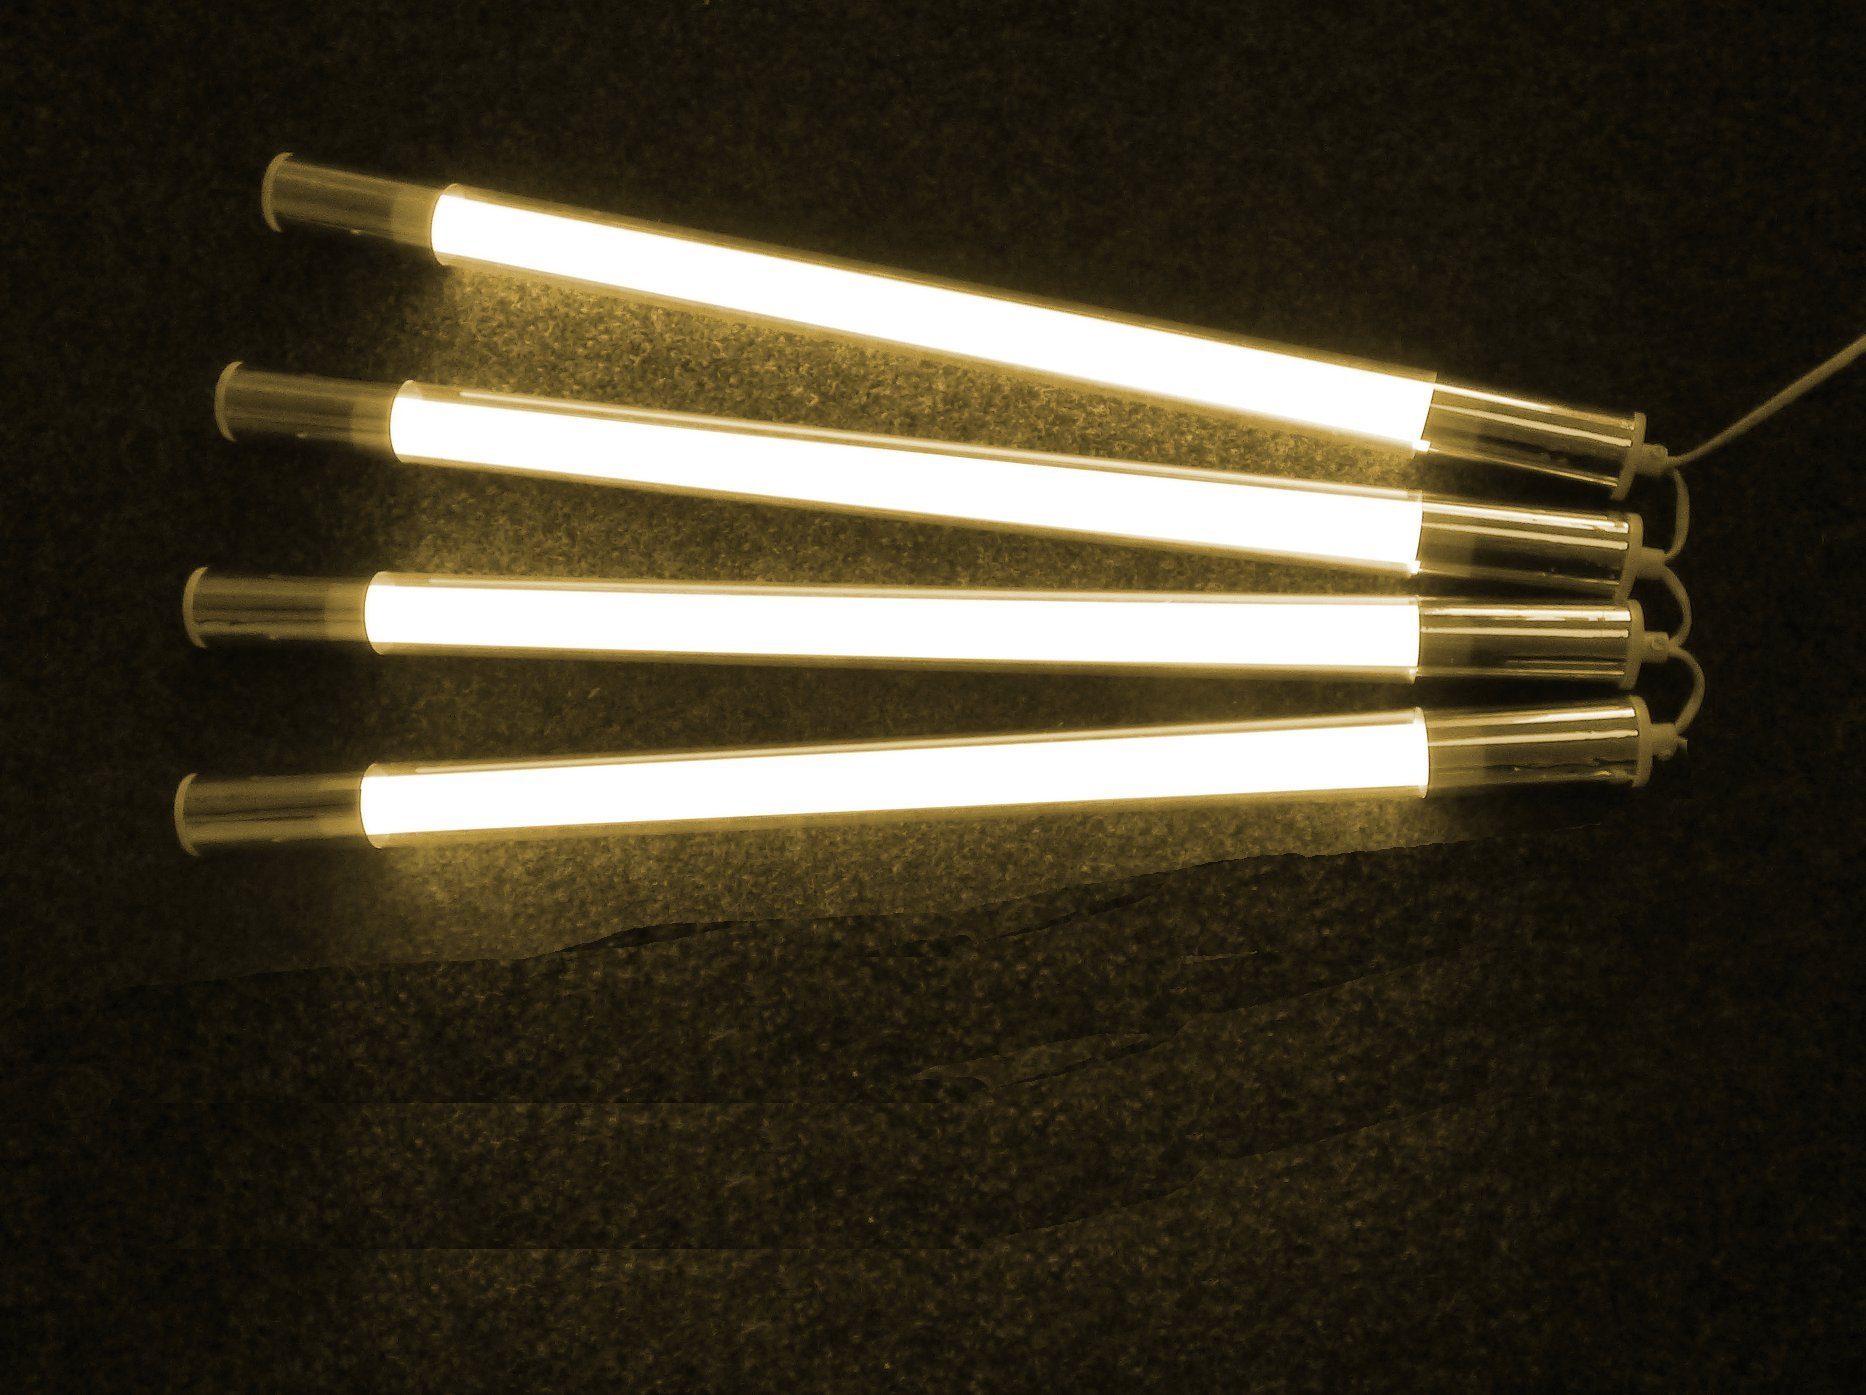 XENON LED Wandleuchte 9259 LED Stab Leuchte QLS 4 x 9 Watt Leuchtstäbe a 65 cm warm weiß, LED Röhre T8, Xenon / Warm Weiß